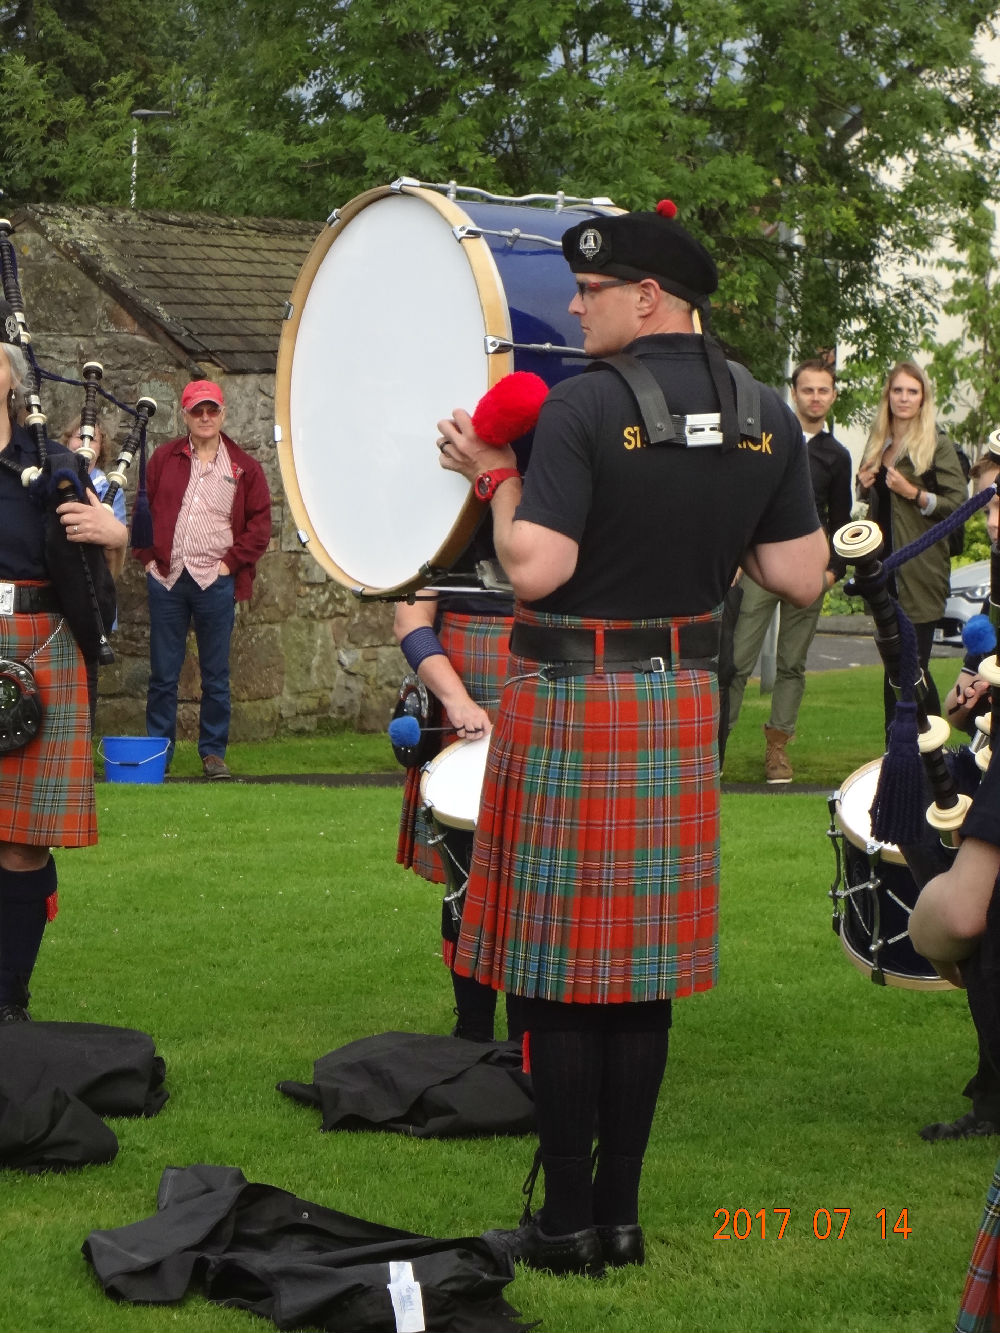 20177英国游之一苏格兰风笛表演